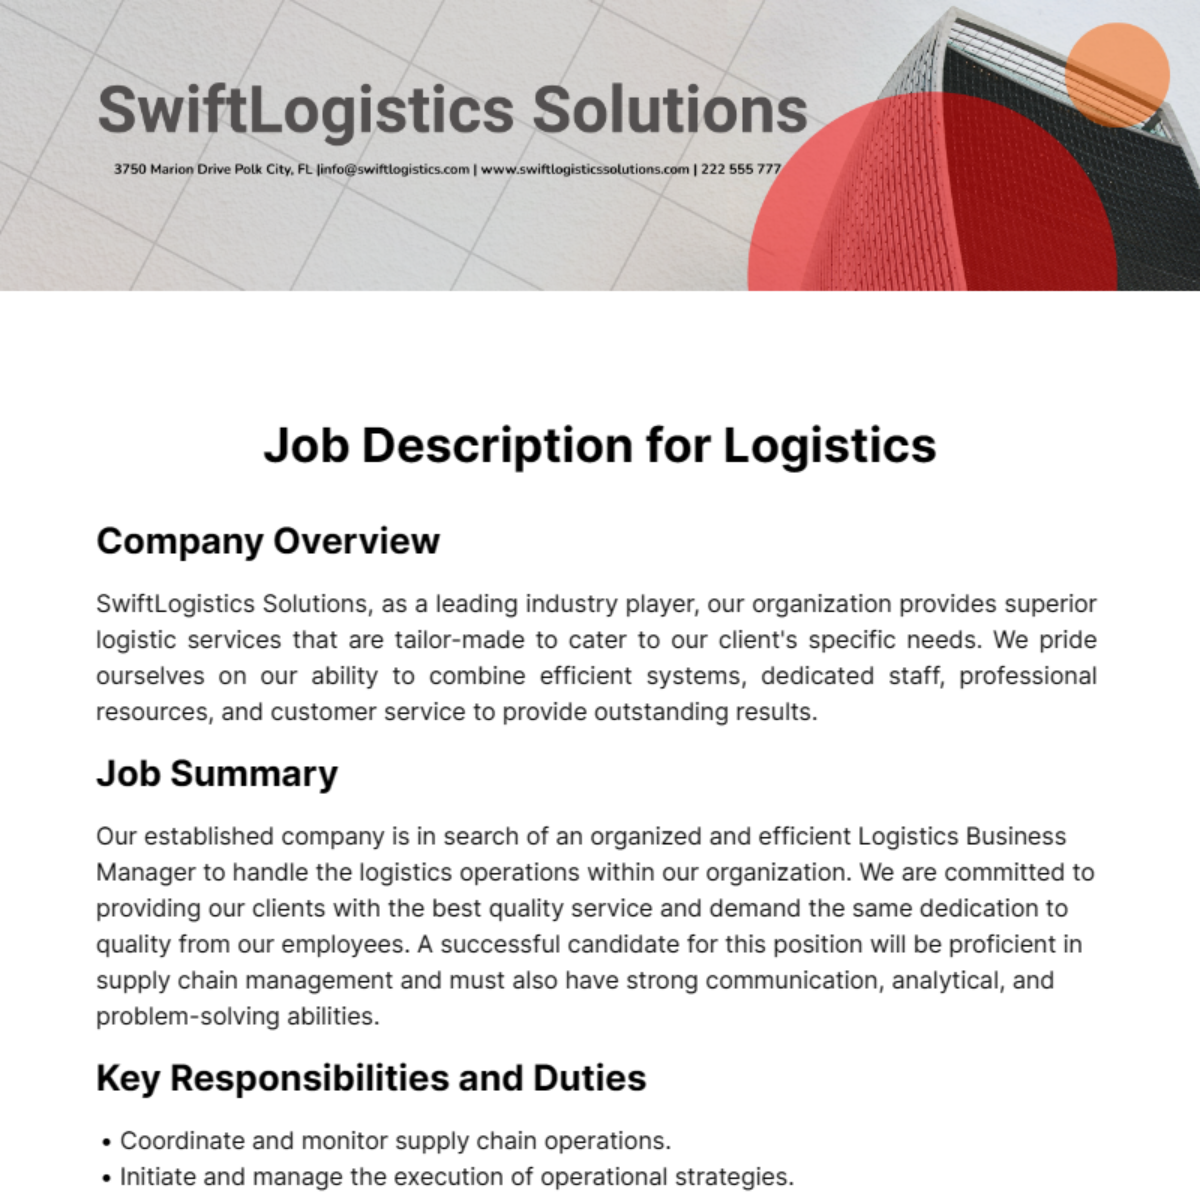 Job Description for Logistics Template